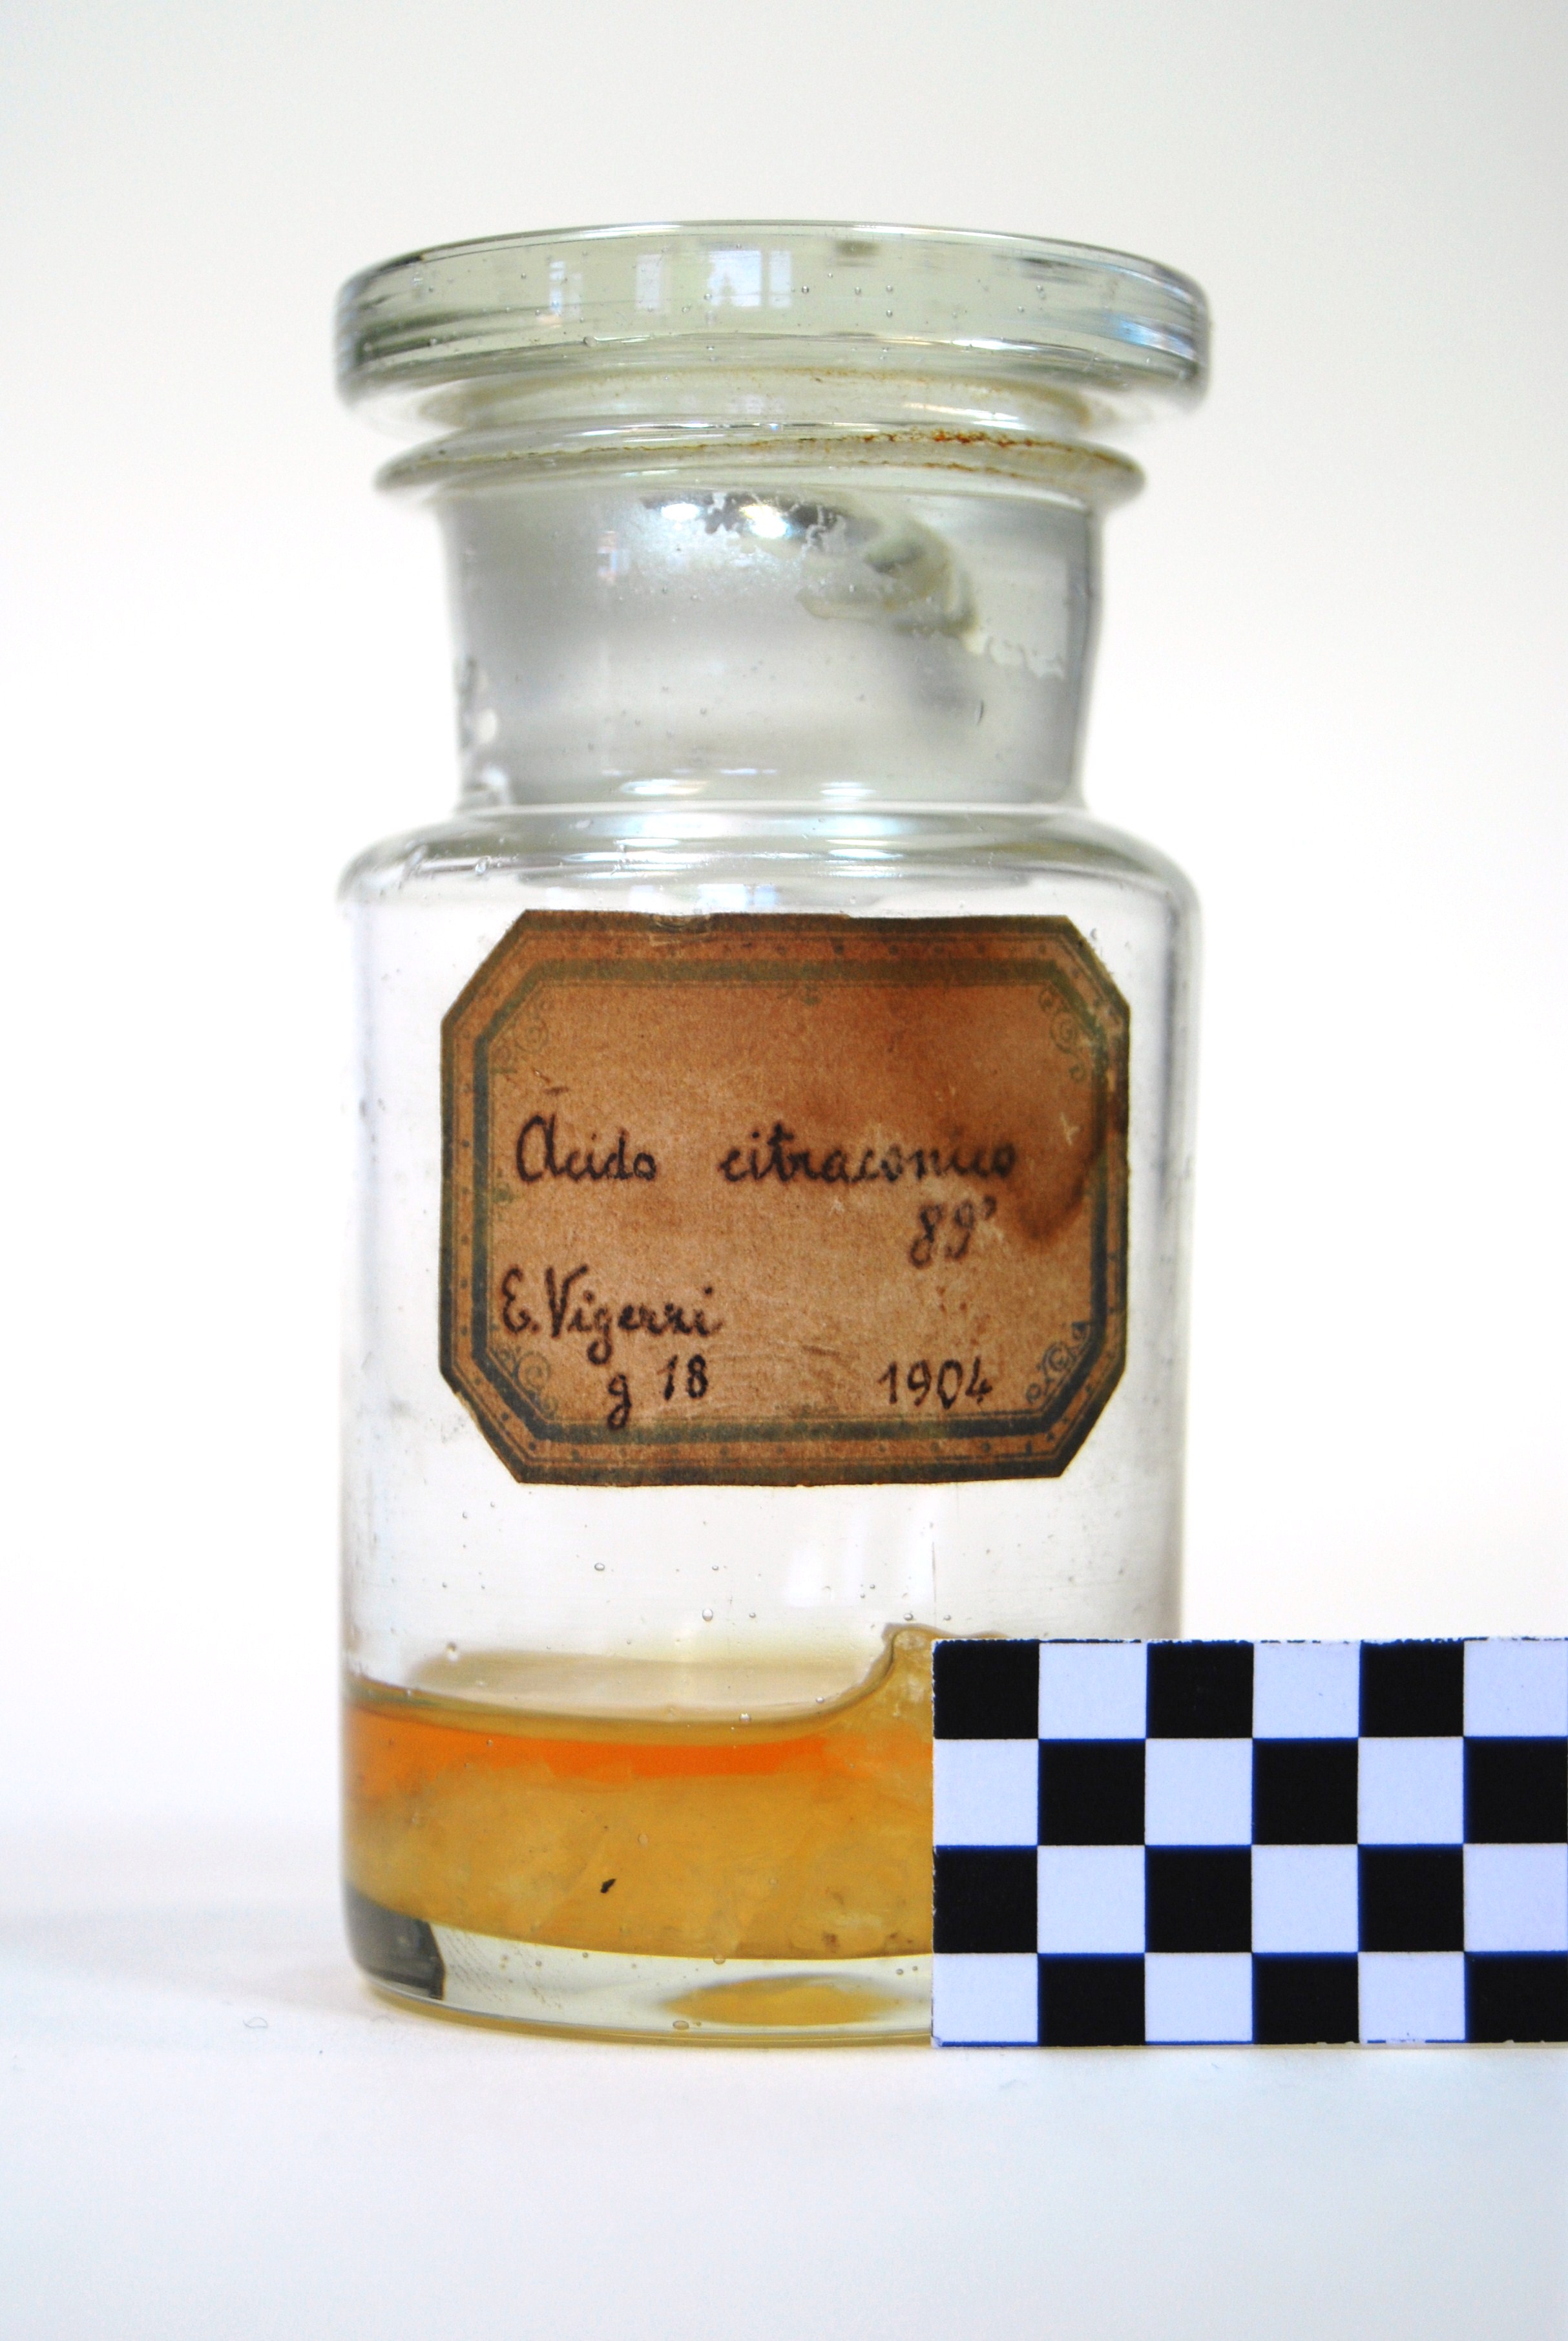 acido citraconico (prodotto chimico, di sintesi) di Ugo Schiff (laboratorio) - scuola chimica fiorentina (metà/ inizio XIX/ XX)